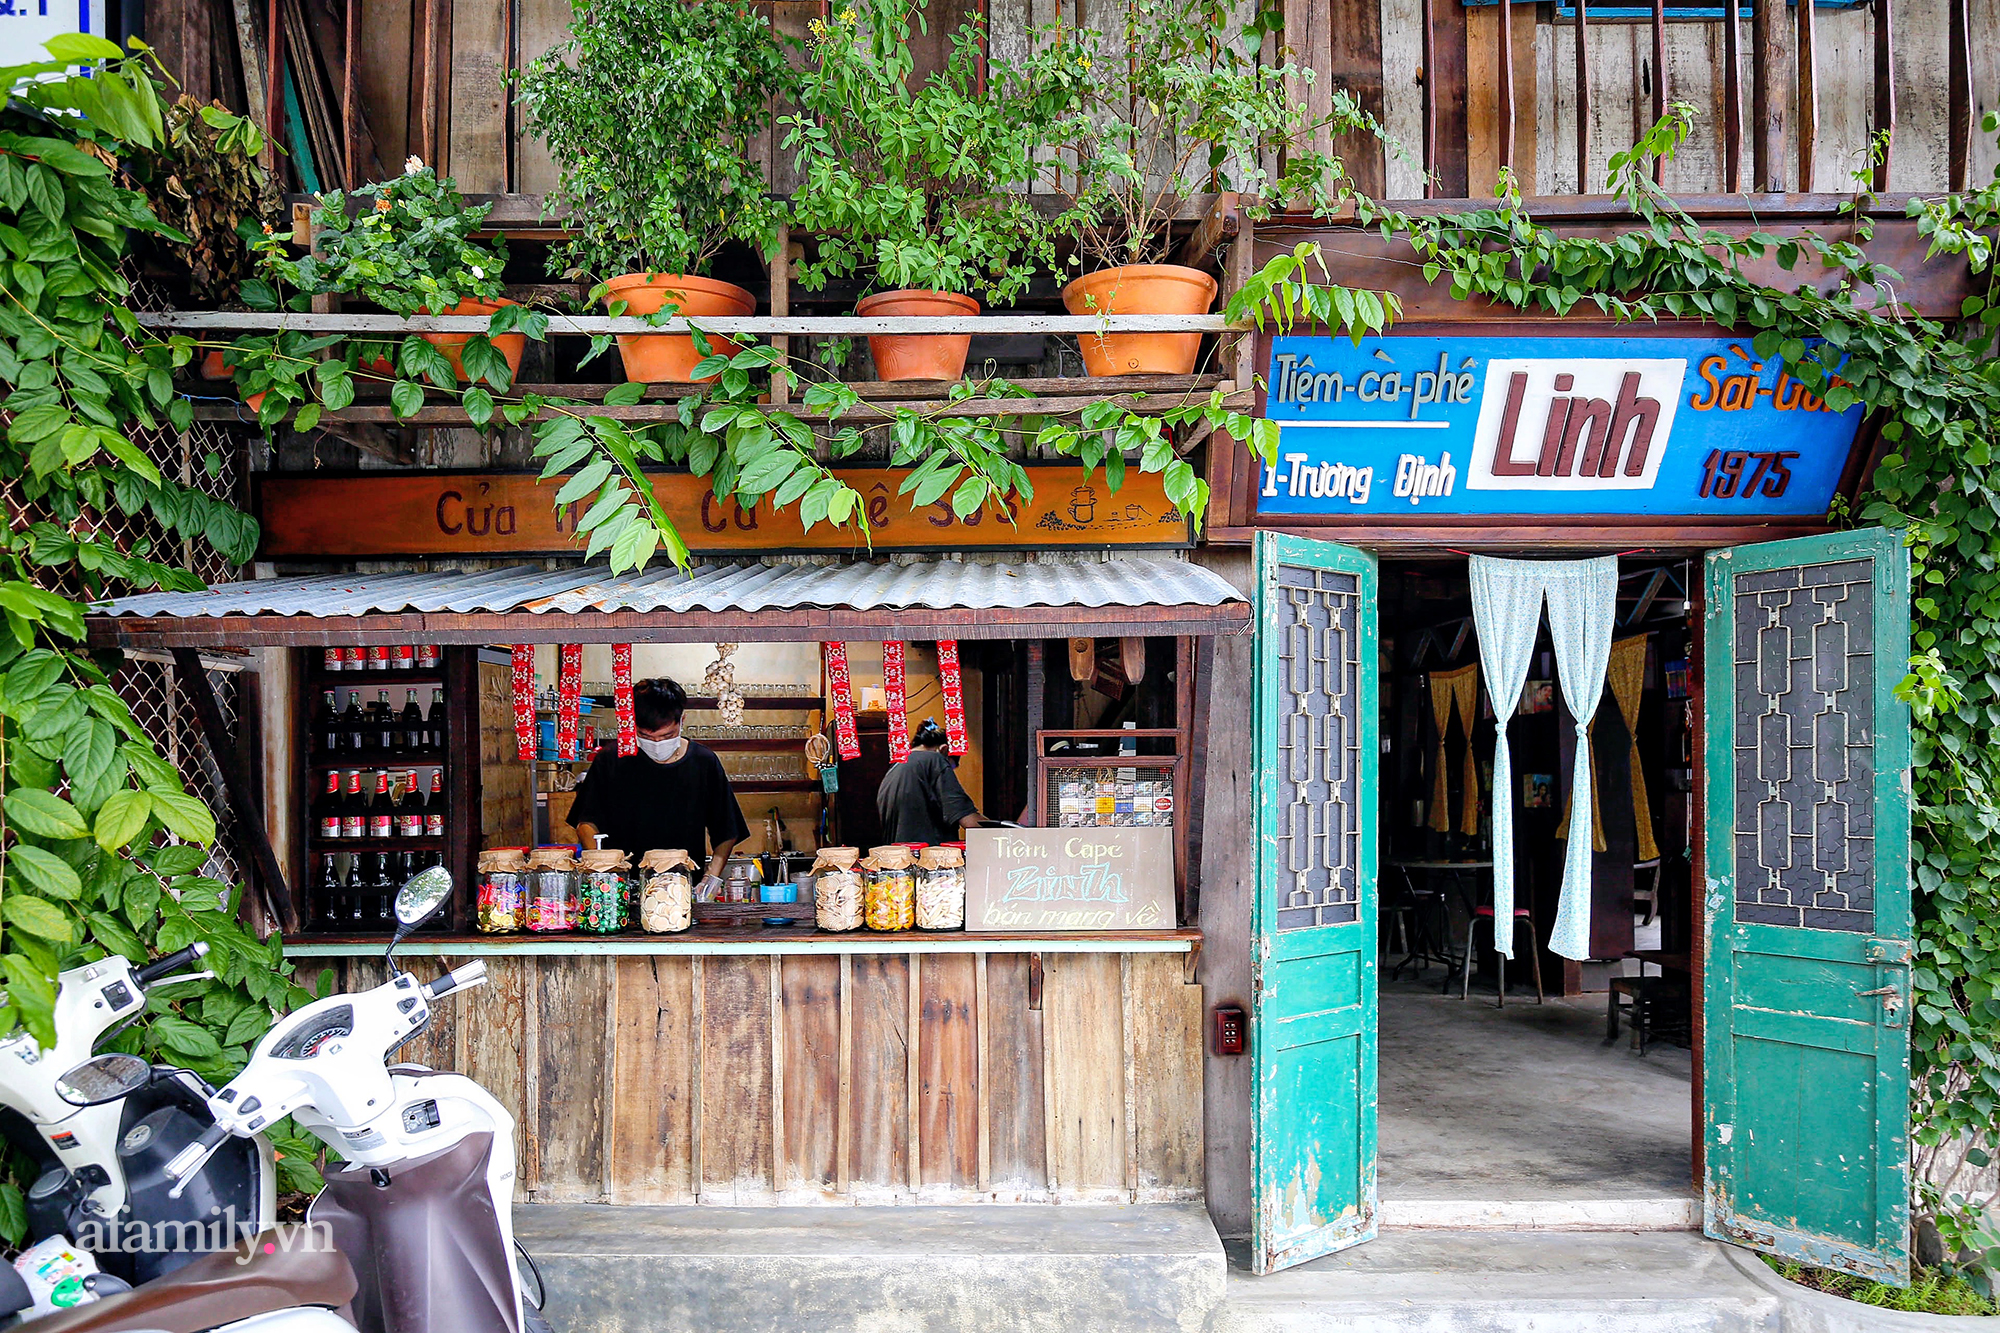 Giữa giao lộ đắt giá quận 1 bất thình lình xuất hiện quán cà phê đậm chất Sài Gòn xưa, hiện là nơi hot đến không tưởng, được check in khắp mạng xã hội - Ảnh 1.